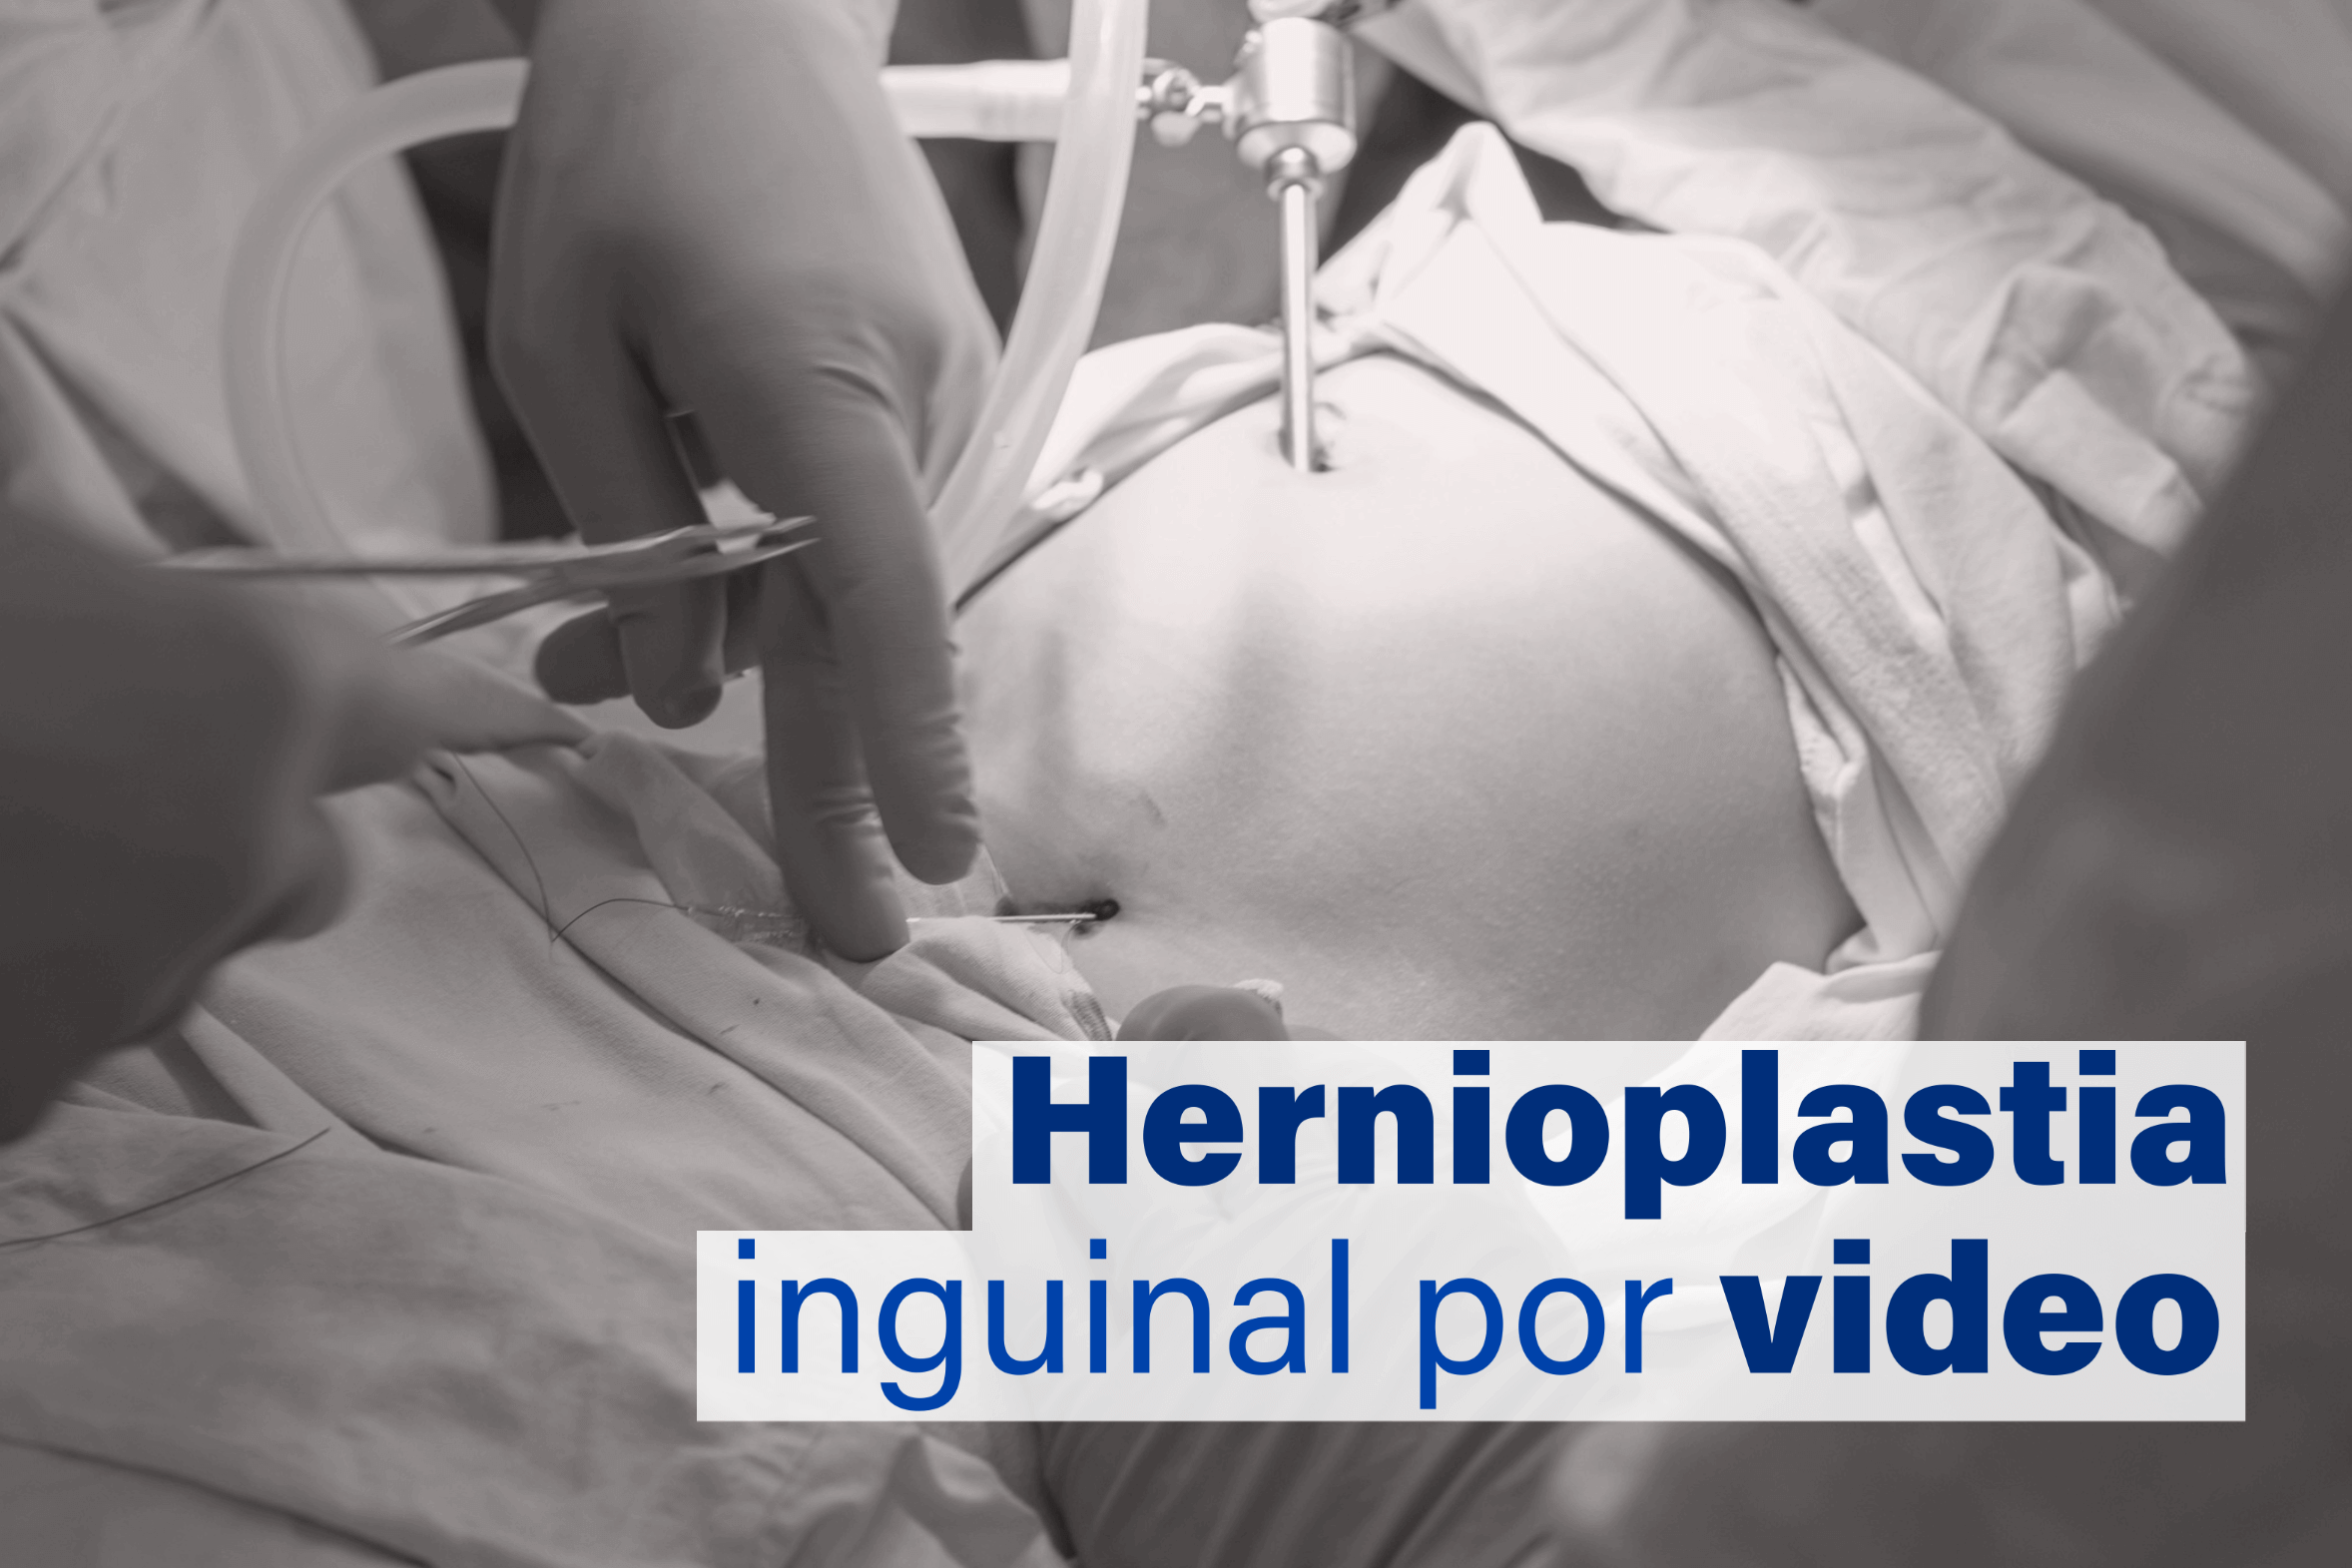 Como é feita a cirurgia de hérnia inguinal por video? - Cirurgia do Aparelho Digestivo Maringá